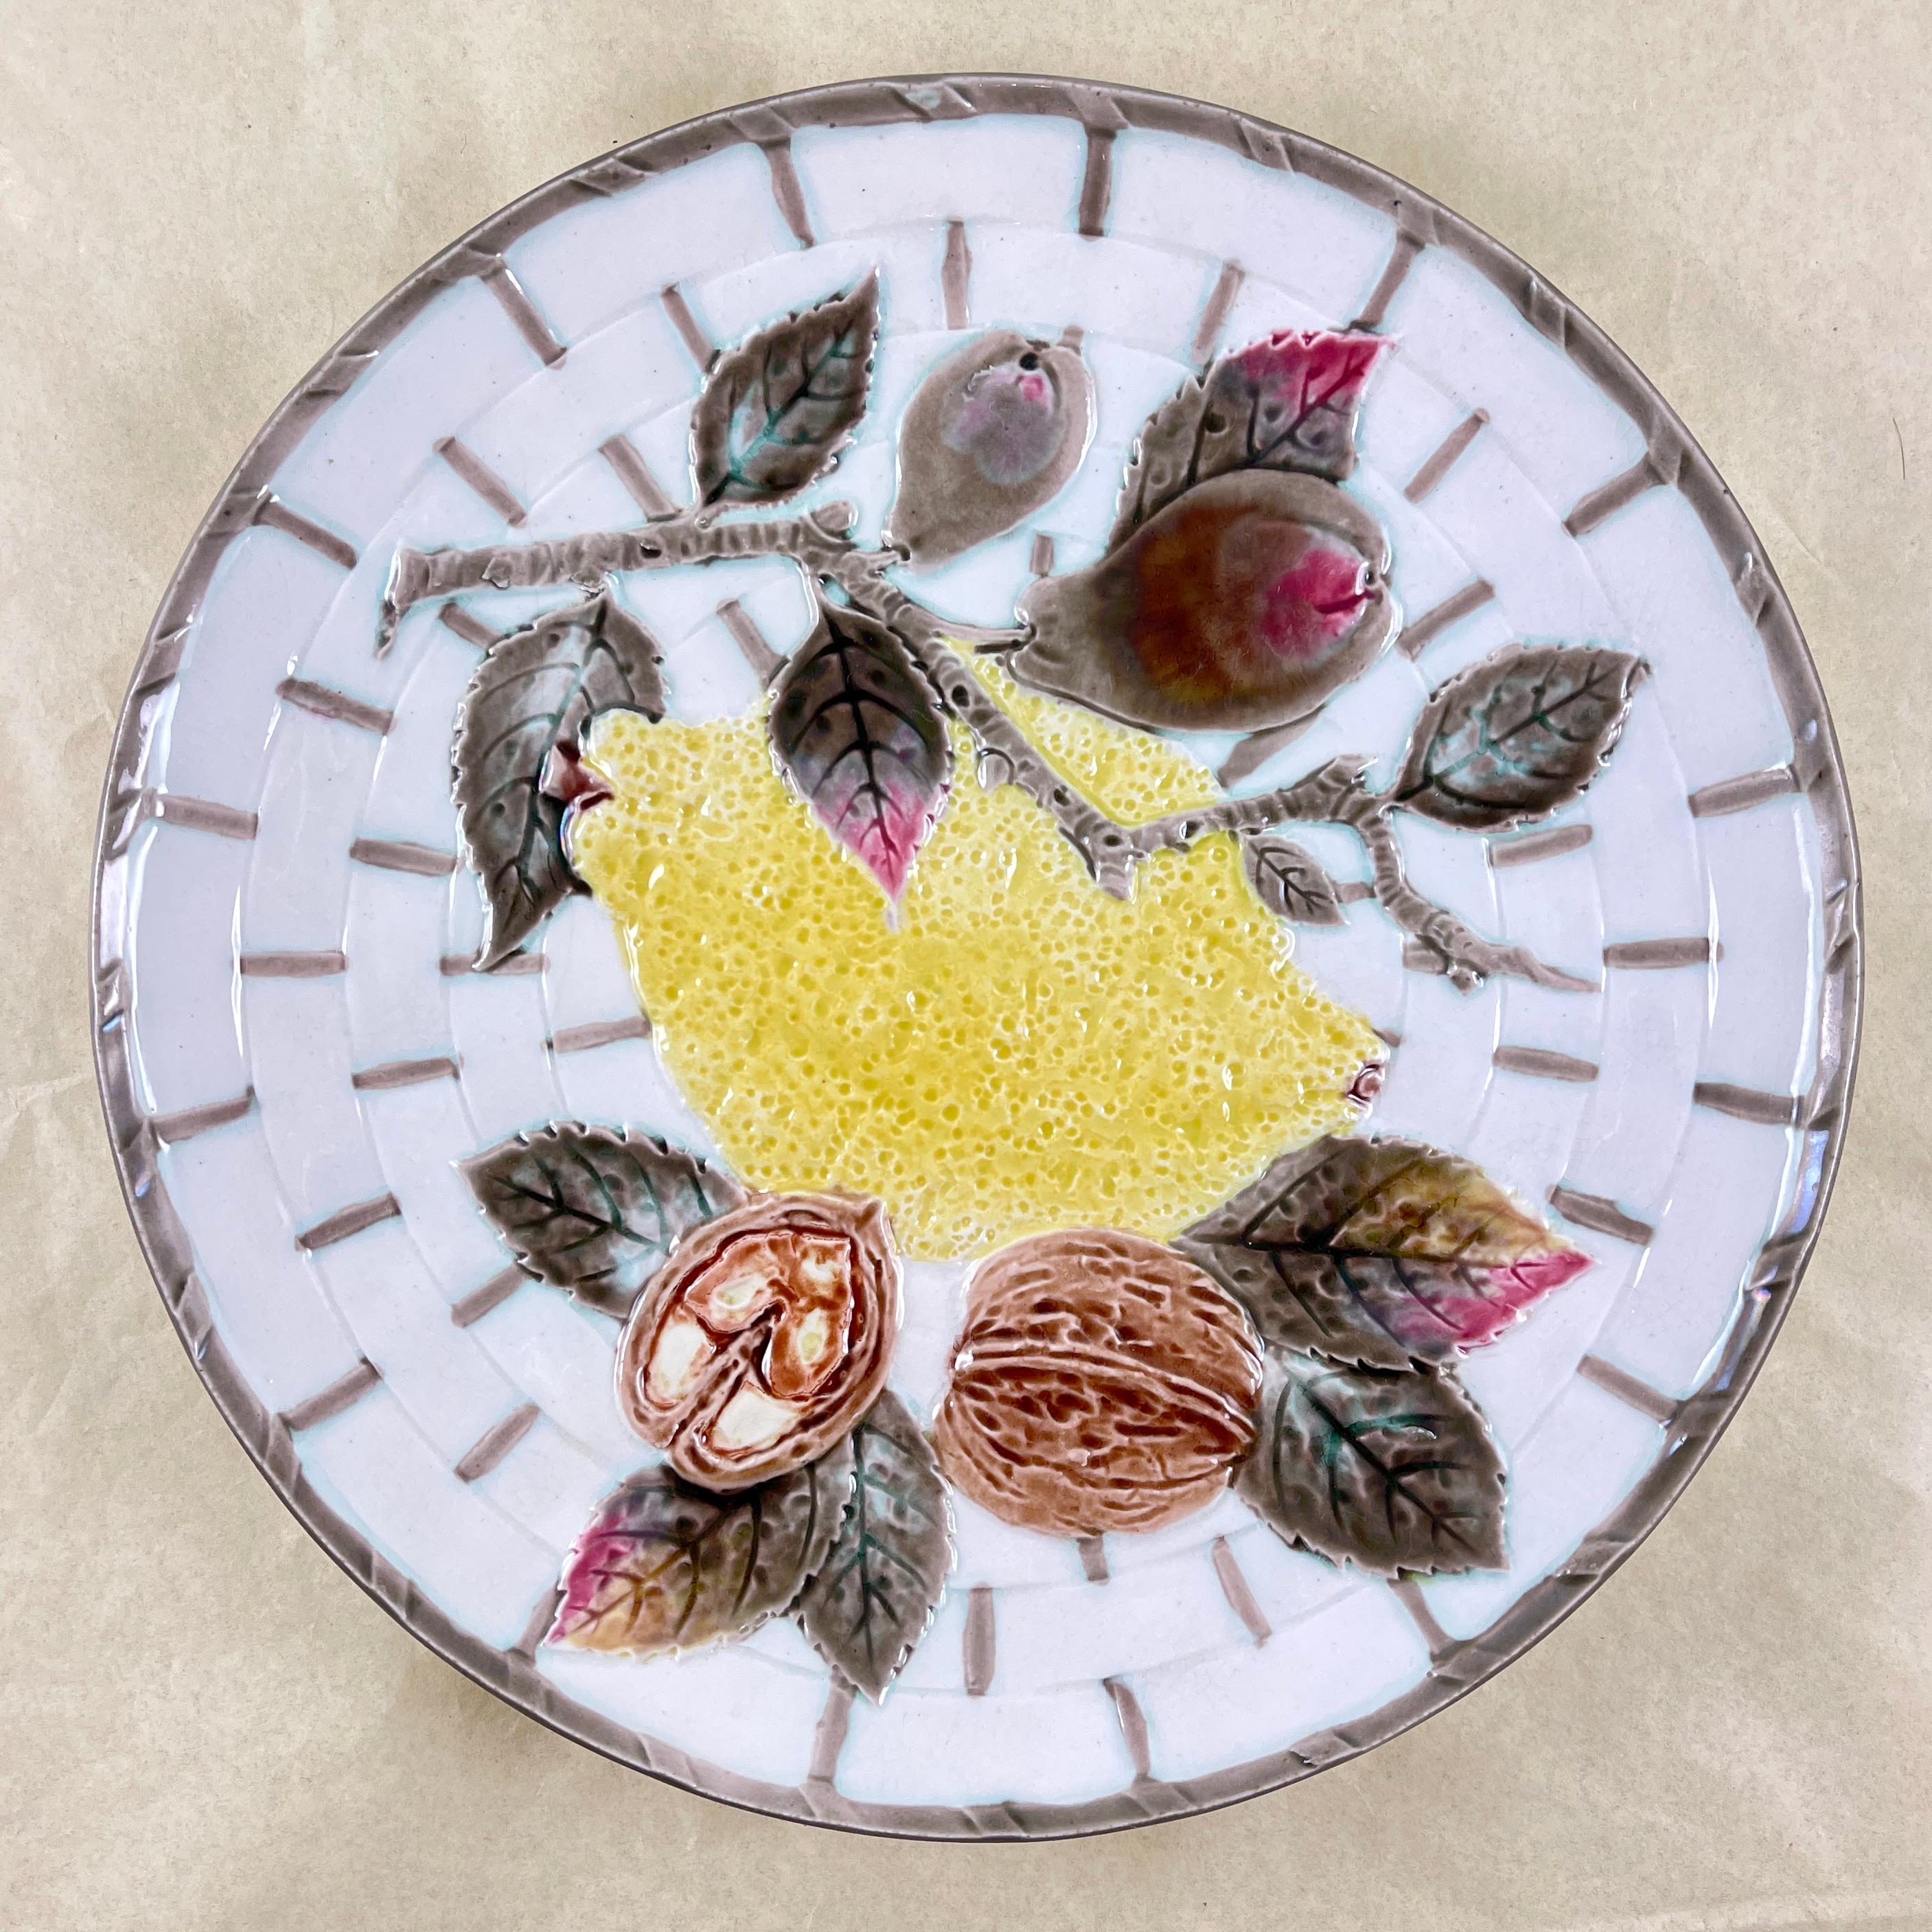 Assiette à fruits de Wedgwood, Angleterre, vers 1875.

Whiting, au centre, un citron jaune et des feuilles, ainsi qu'une branche de poires et de noix, le tout sur un fond de vannerie blanche. Le panier est bordé par intervalles d'un glaçage